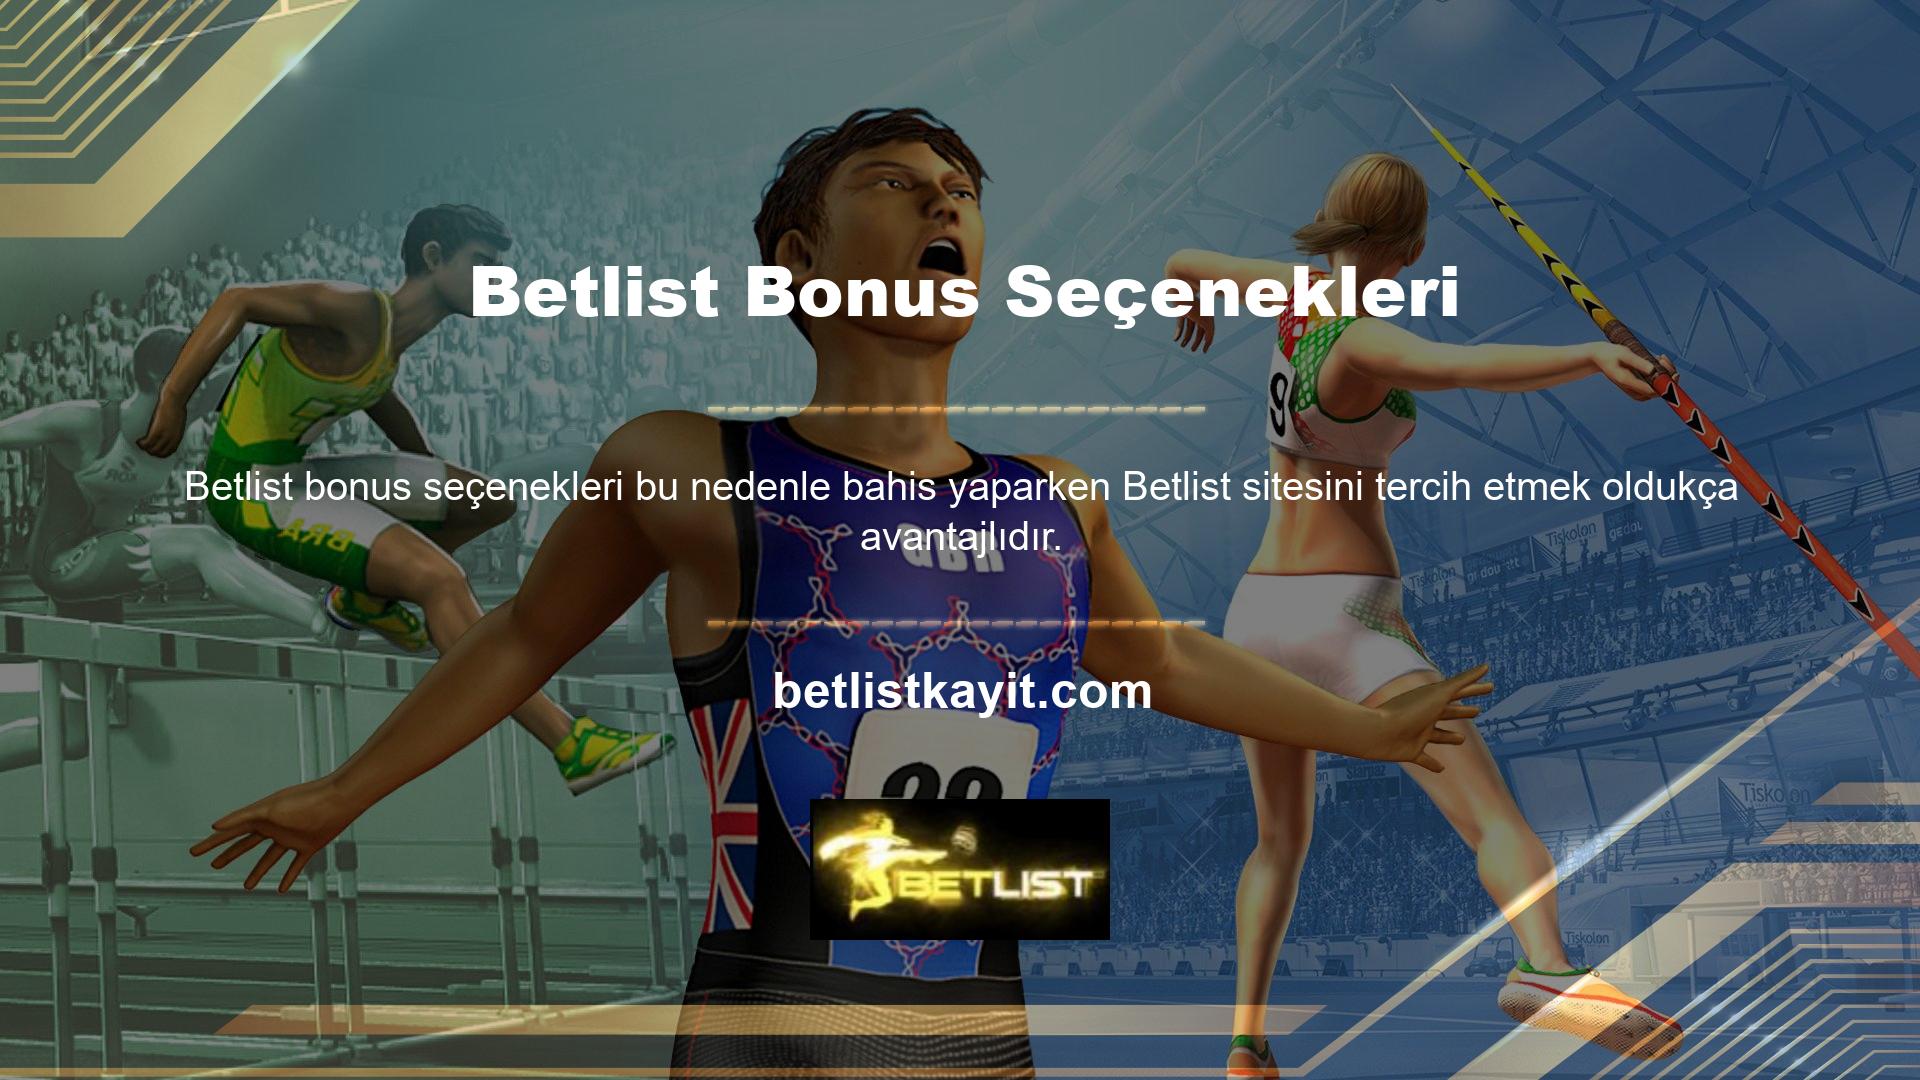 Betlist en popüler oyun sitelerinden biridir ve üye sayısı hızla artmaktadır